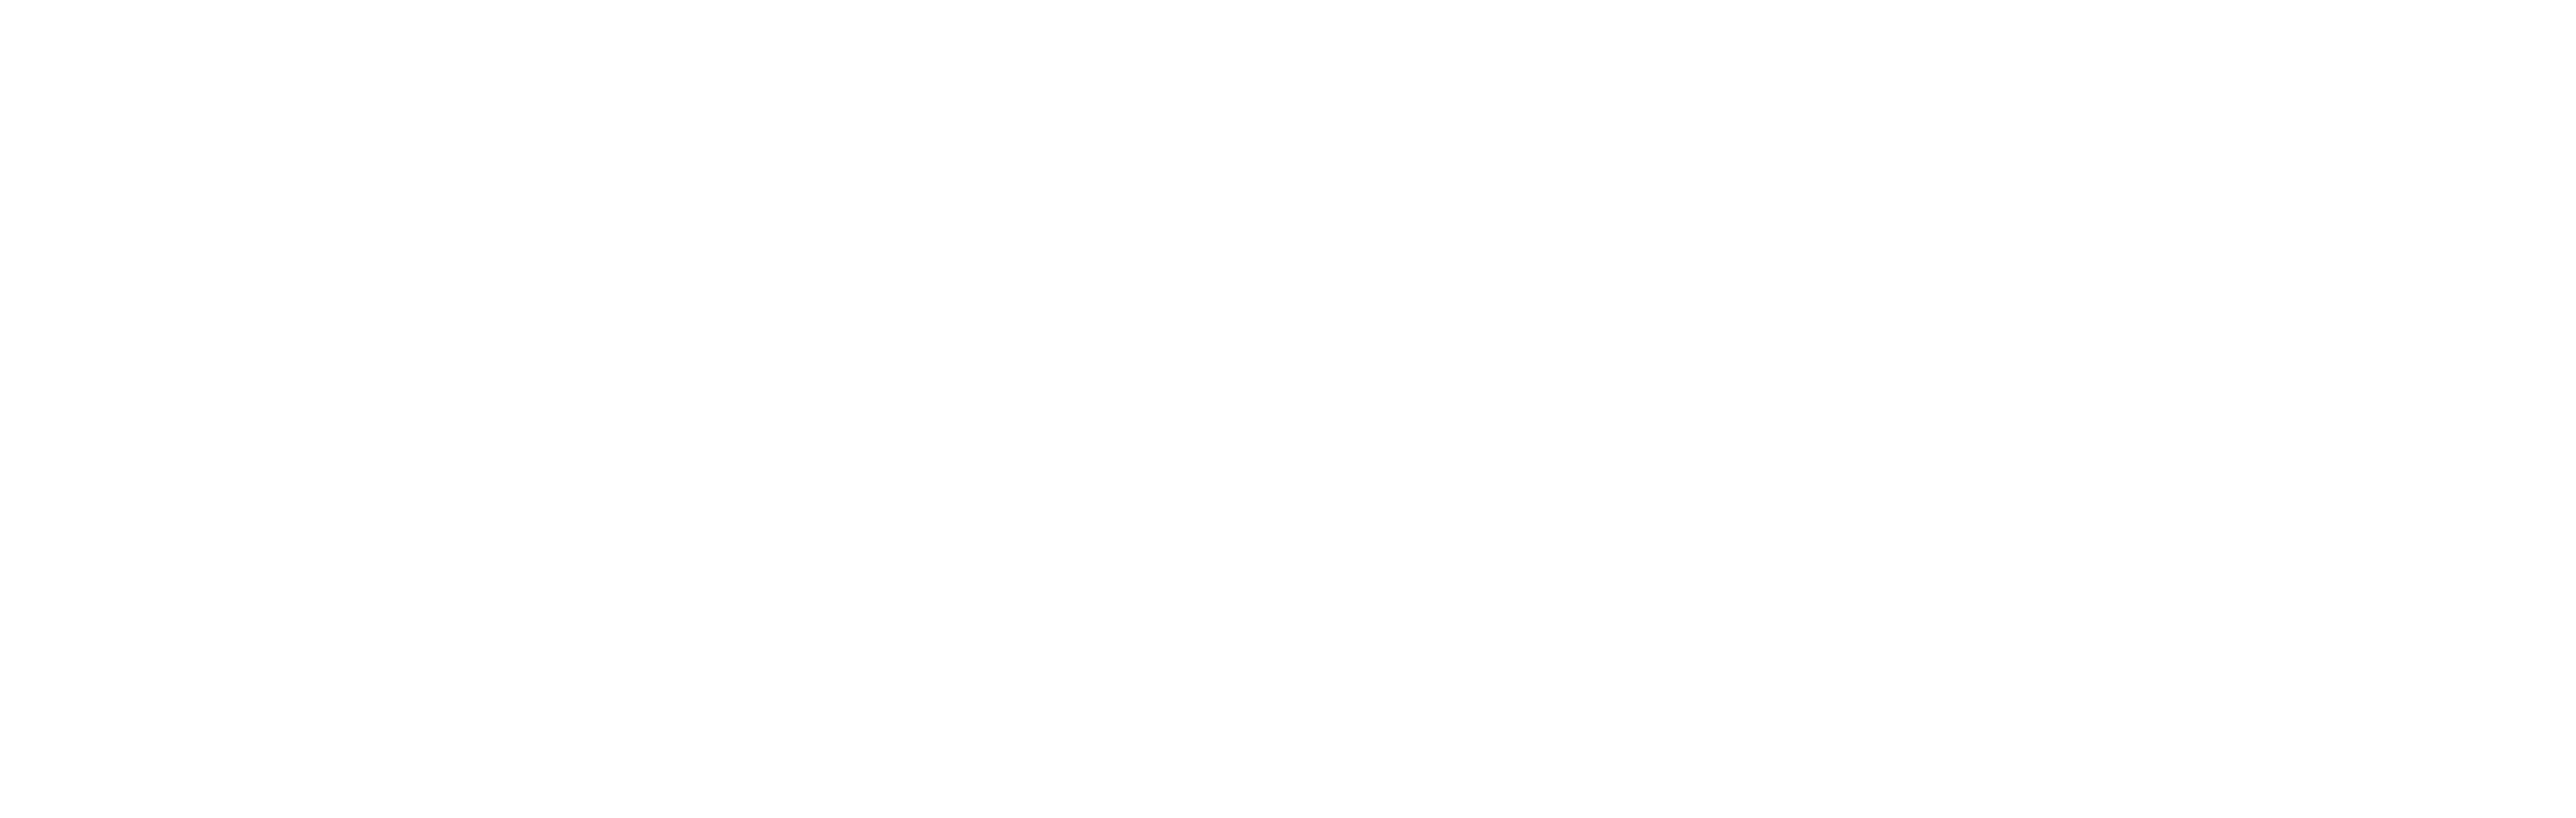 AniCura Vet's Barberá Clínica Veterinaria logo